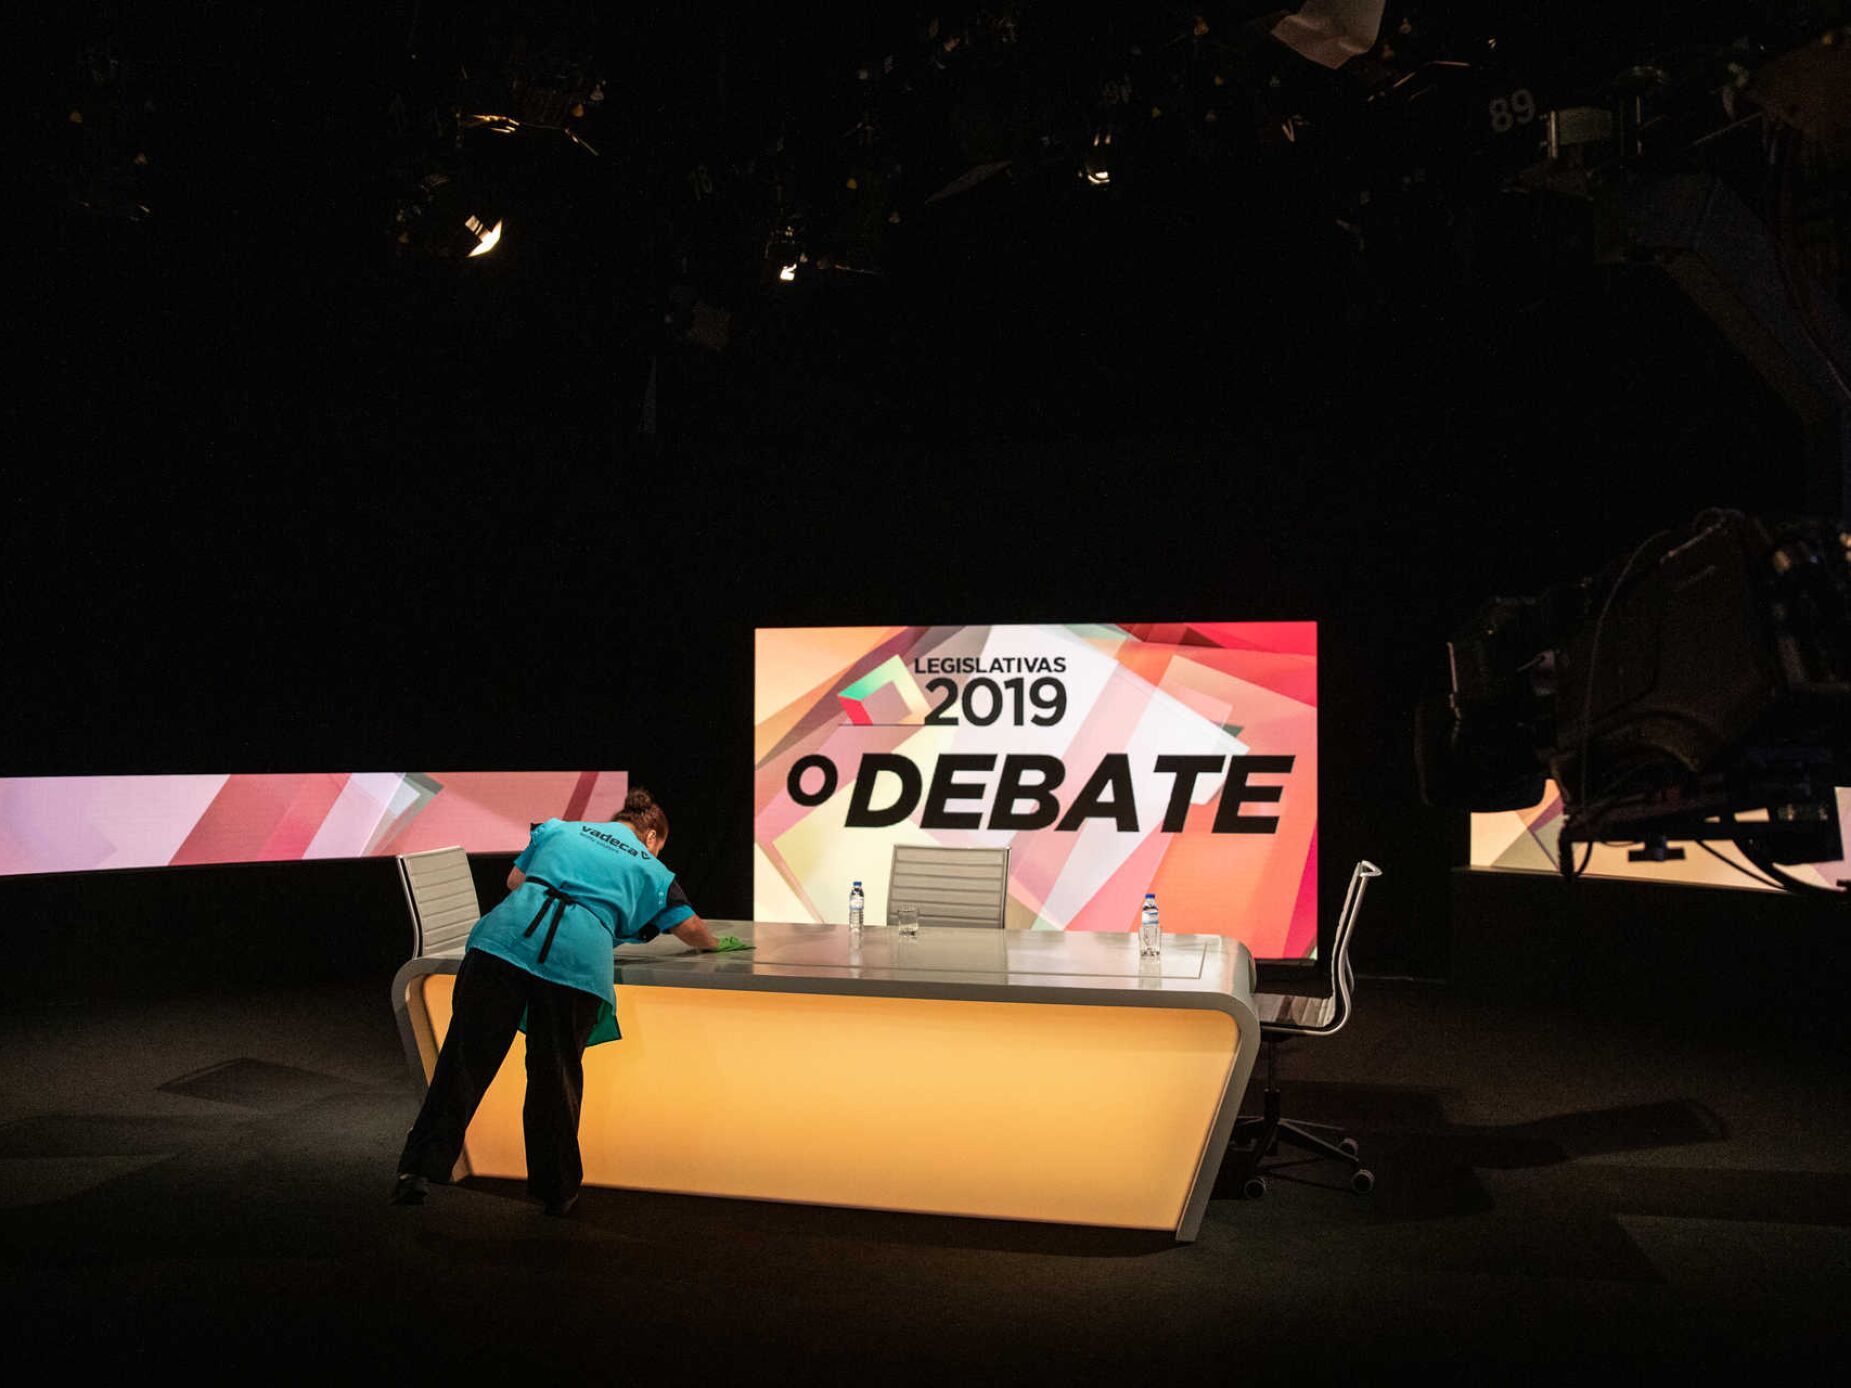 Uma maratona televisiva: 30 debates, cinco estreantes, três veteranos